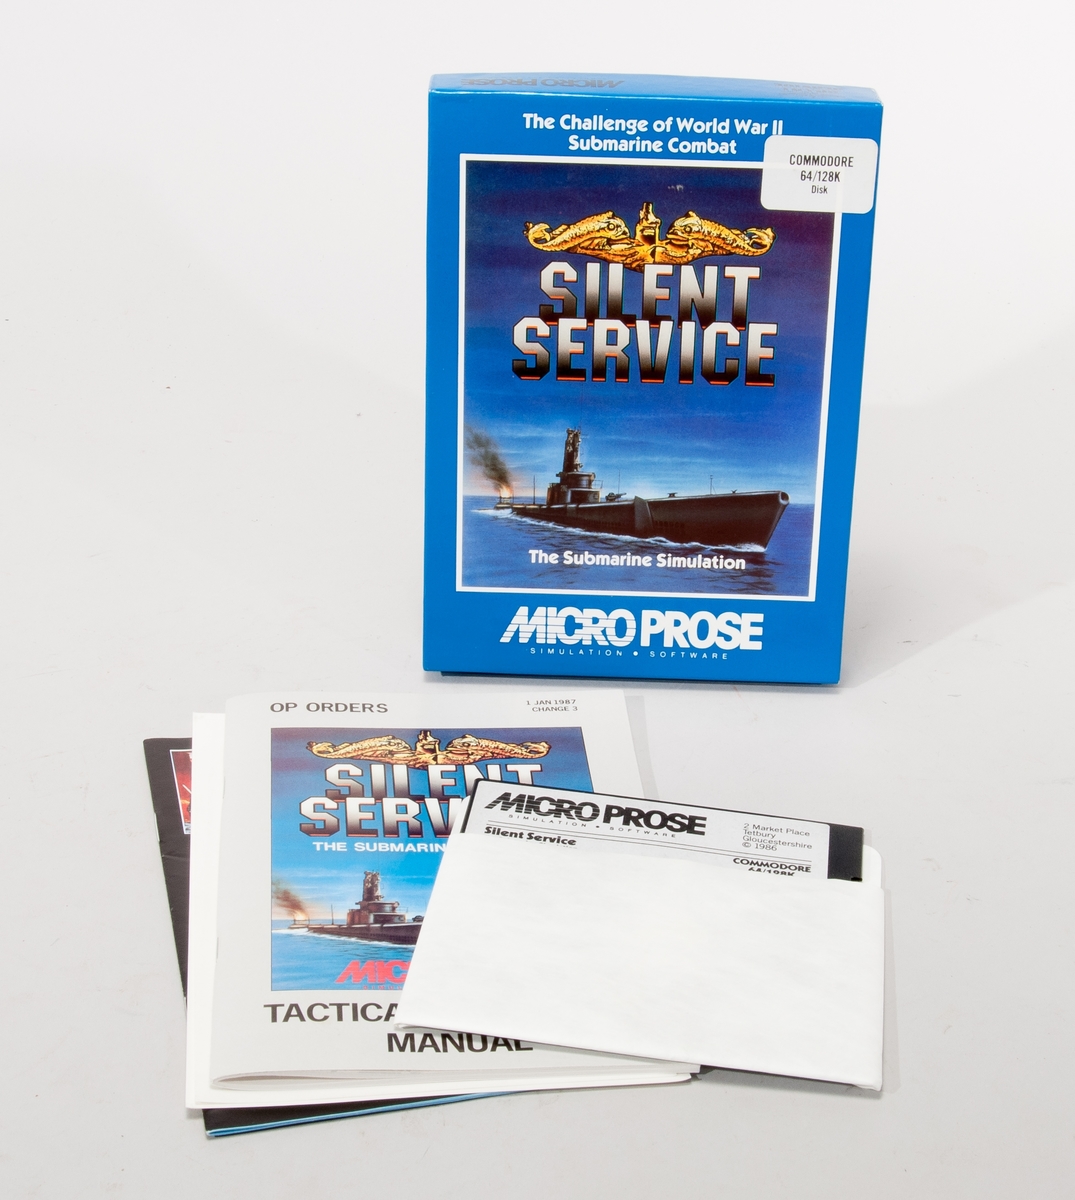 Datorspel till Commodore 64/128k, floppydisk och manual i förpackning av papp.